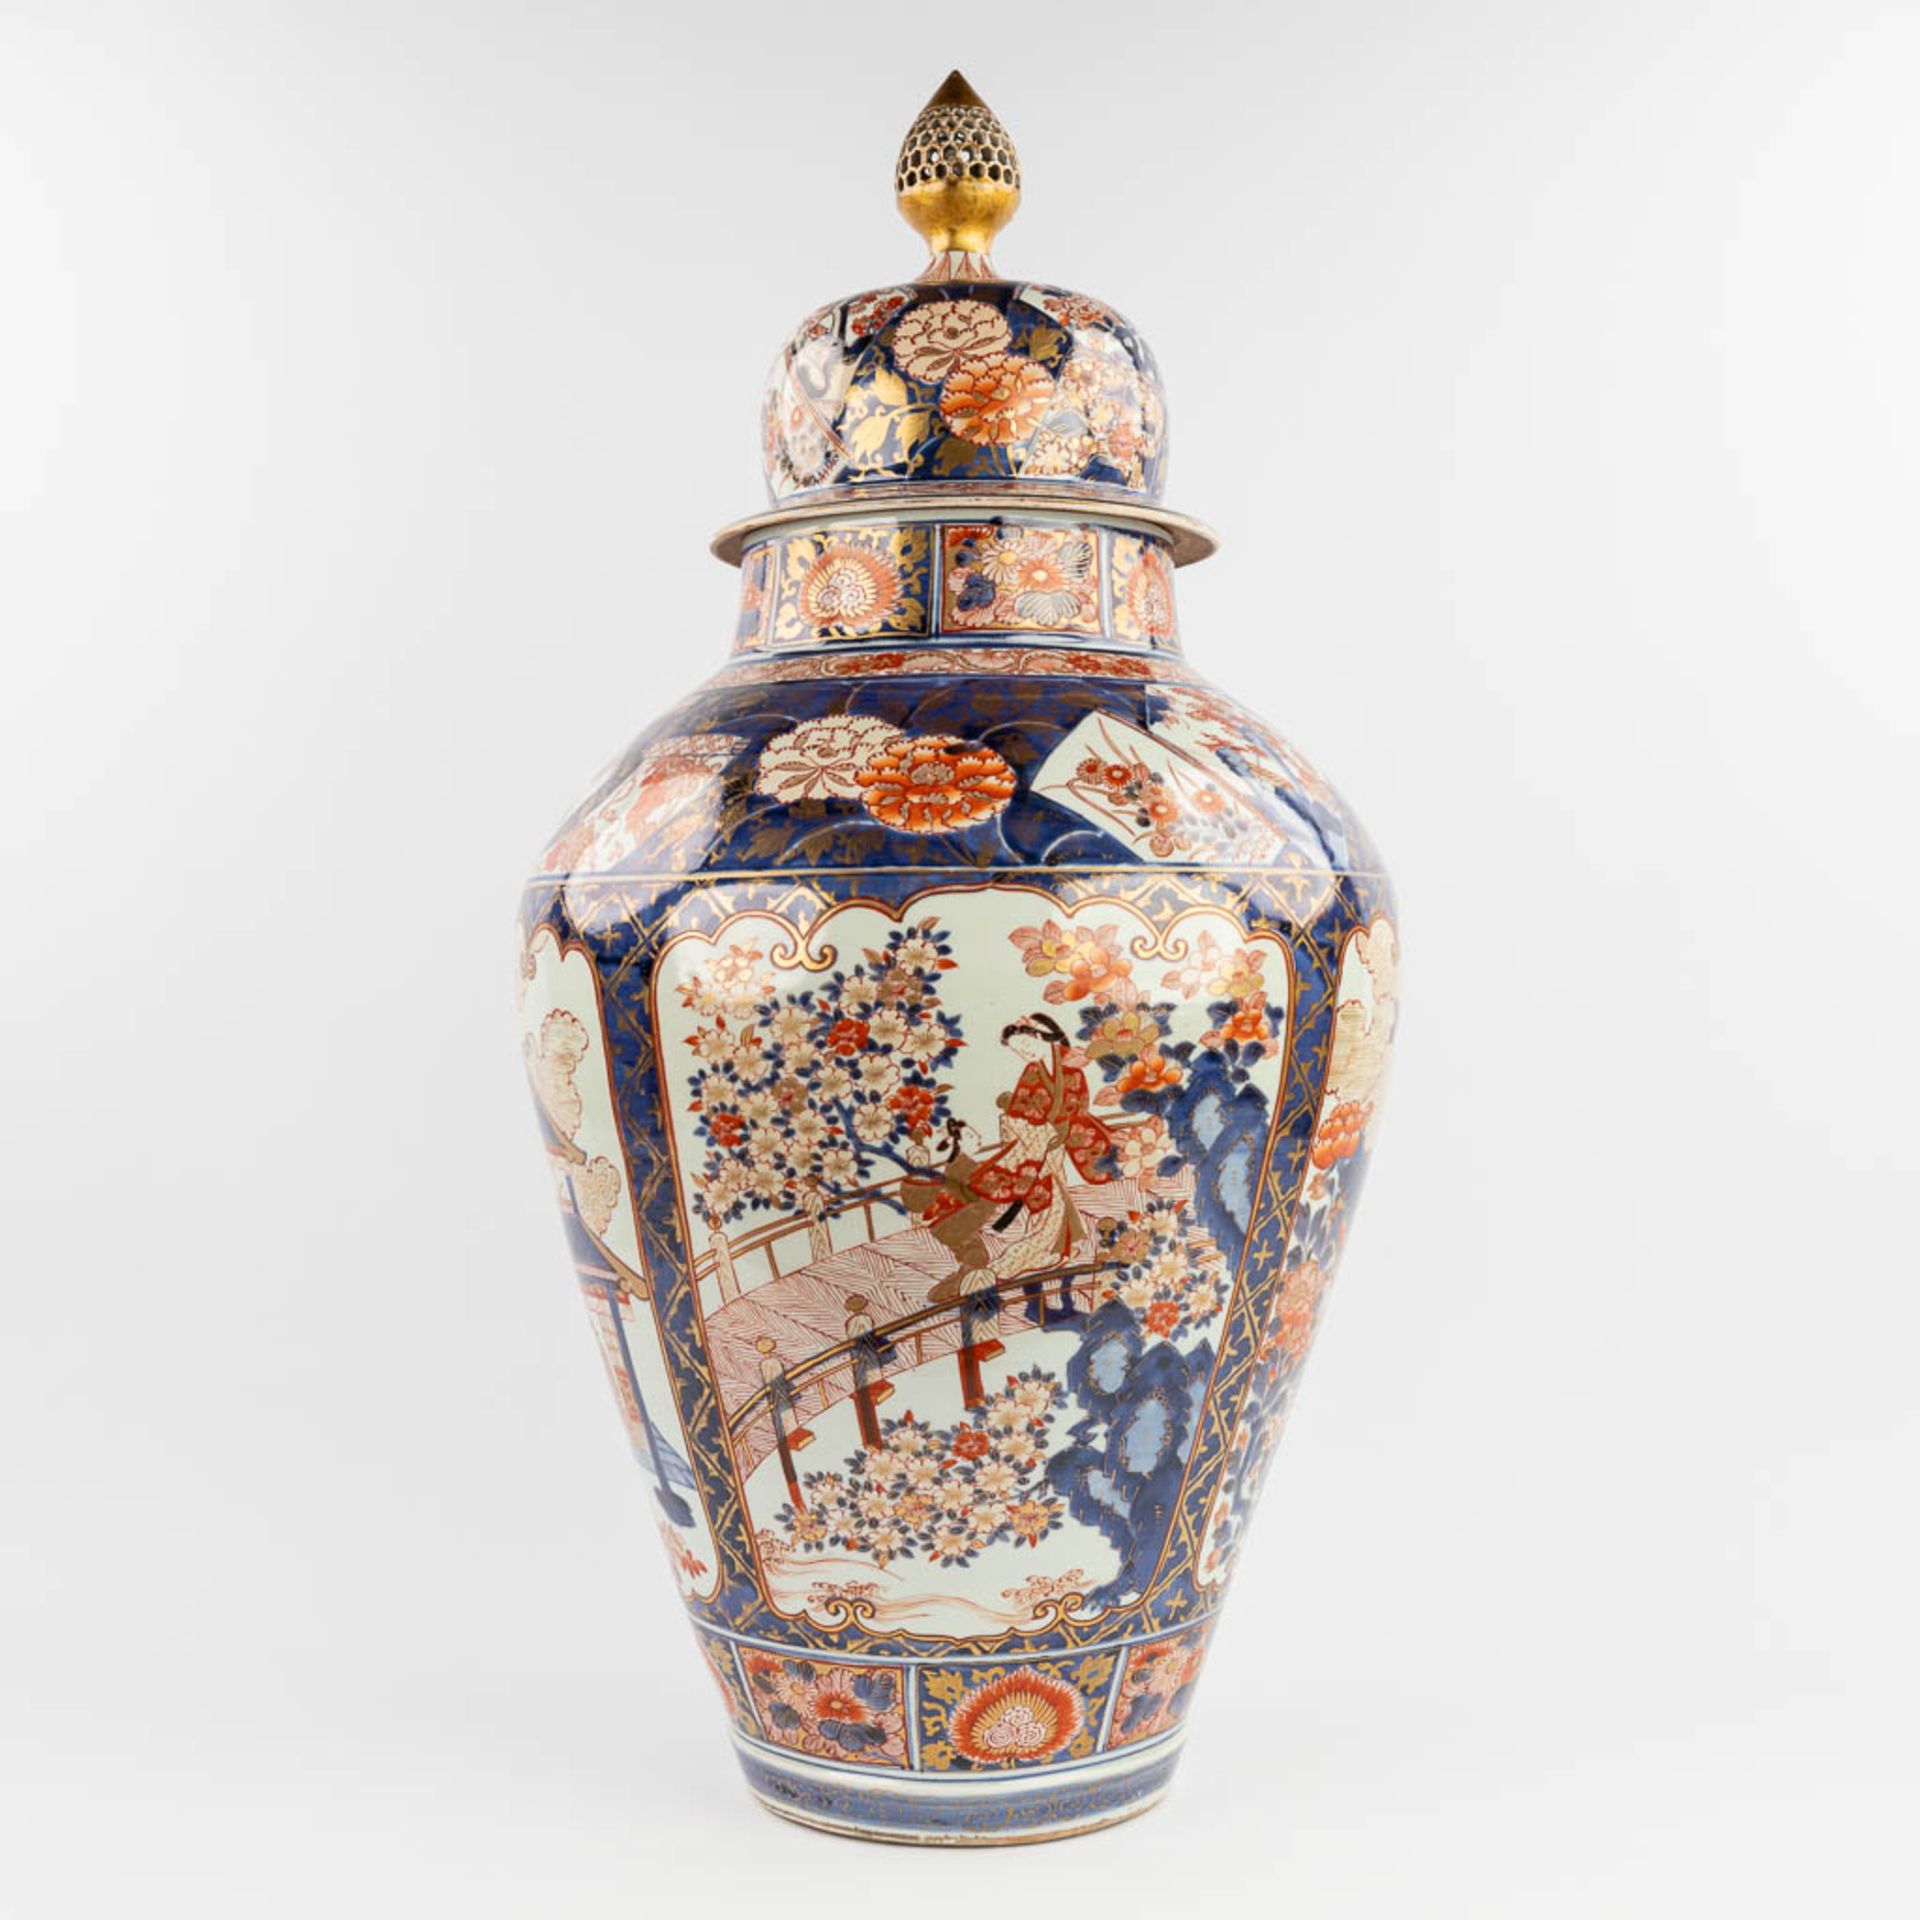 A large vase with lid, Imari porcelain, 19th century. (H: 87 x D: 39 cm)